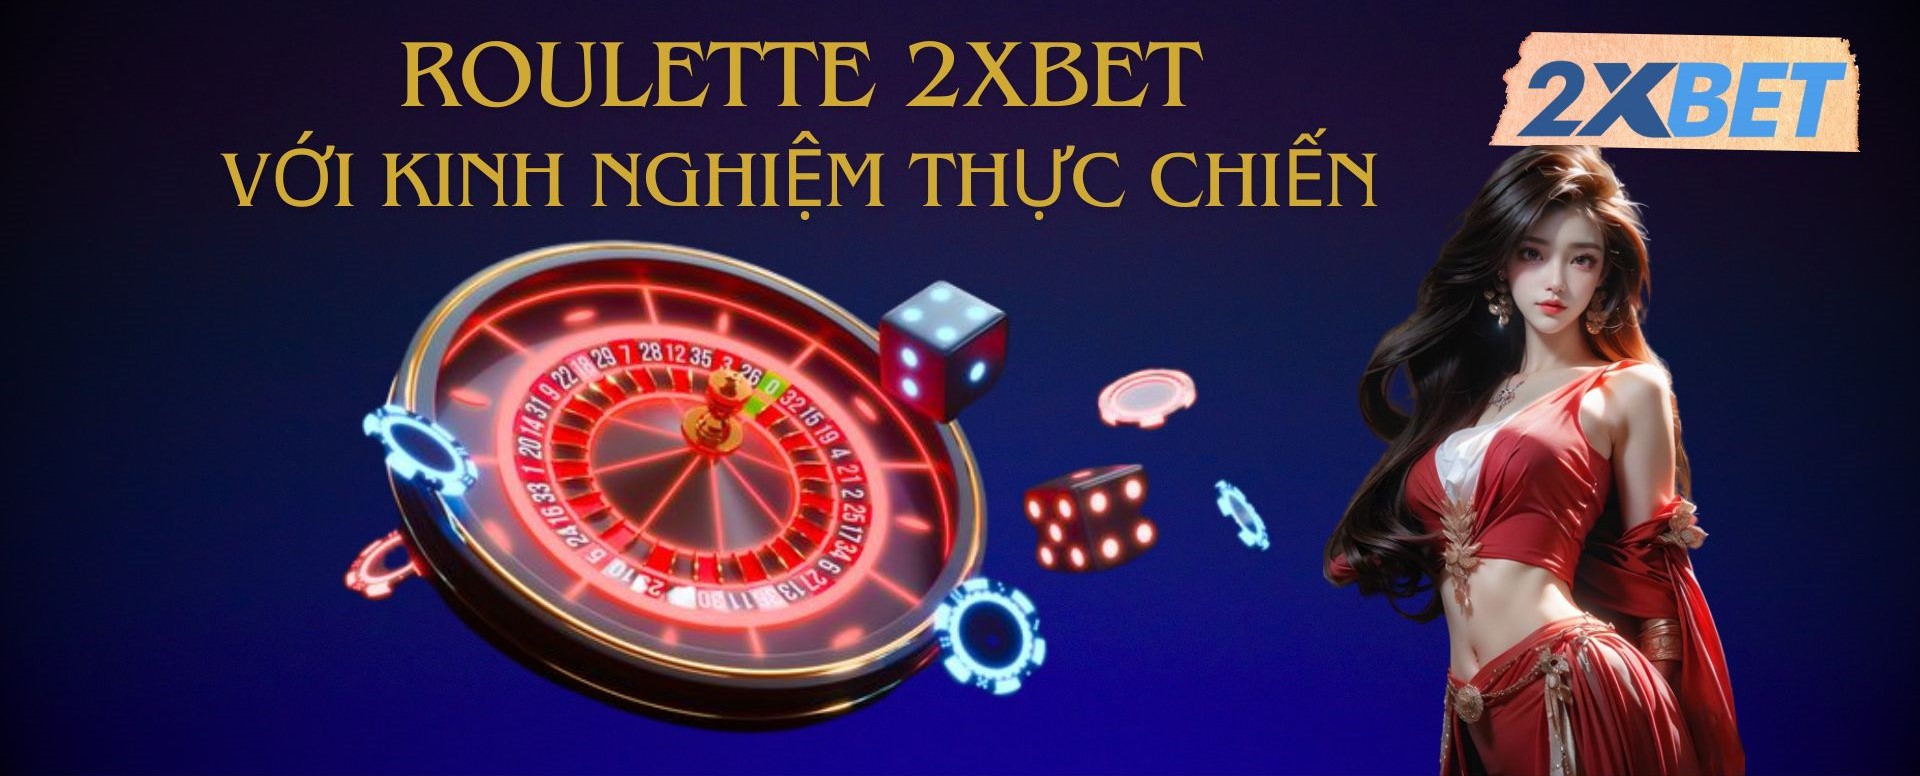 Game cá cược Roulette tại nhà cái 2XBET